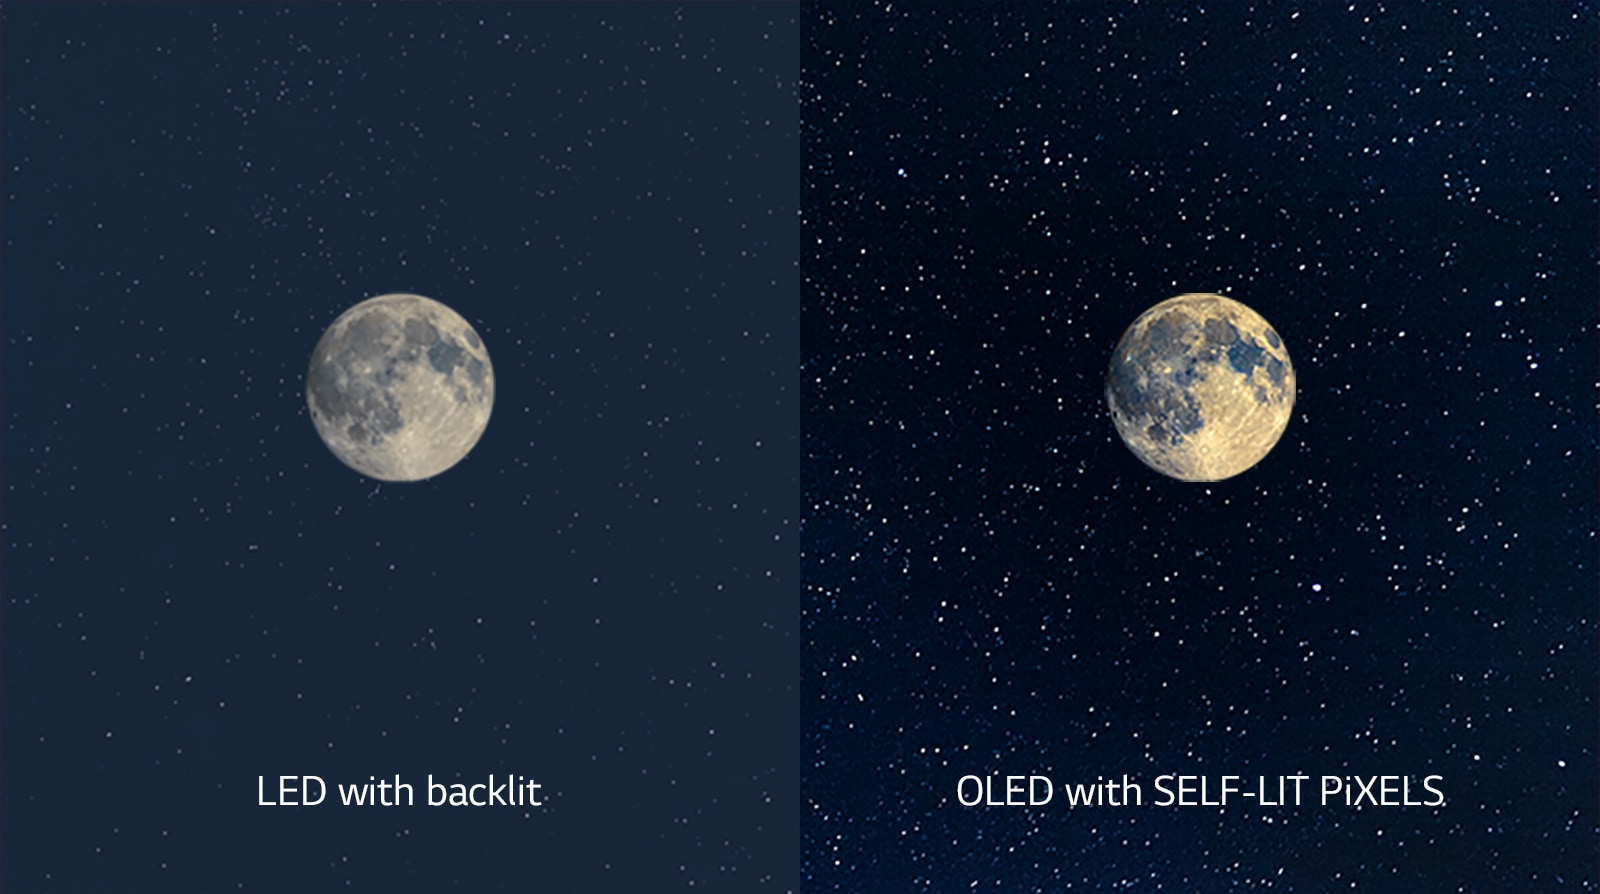 مشهد يوضح القمر، على تلفزيون LED بالجانب الأيسر مع لون أسود غير واضح وتلفزيون OLED على اليمين بلون أسود مثالي (تشغيل الفيديو)